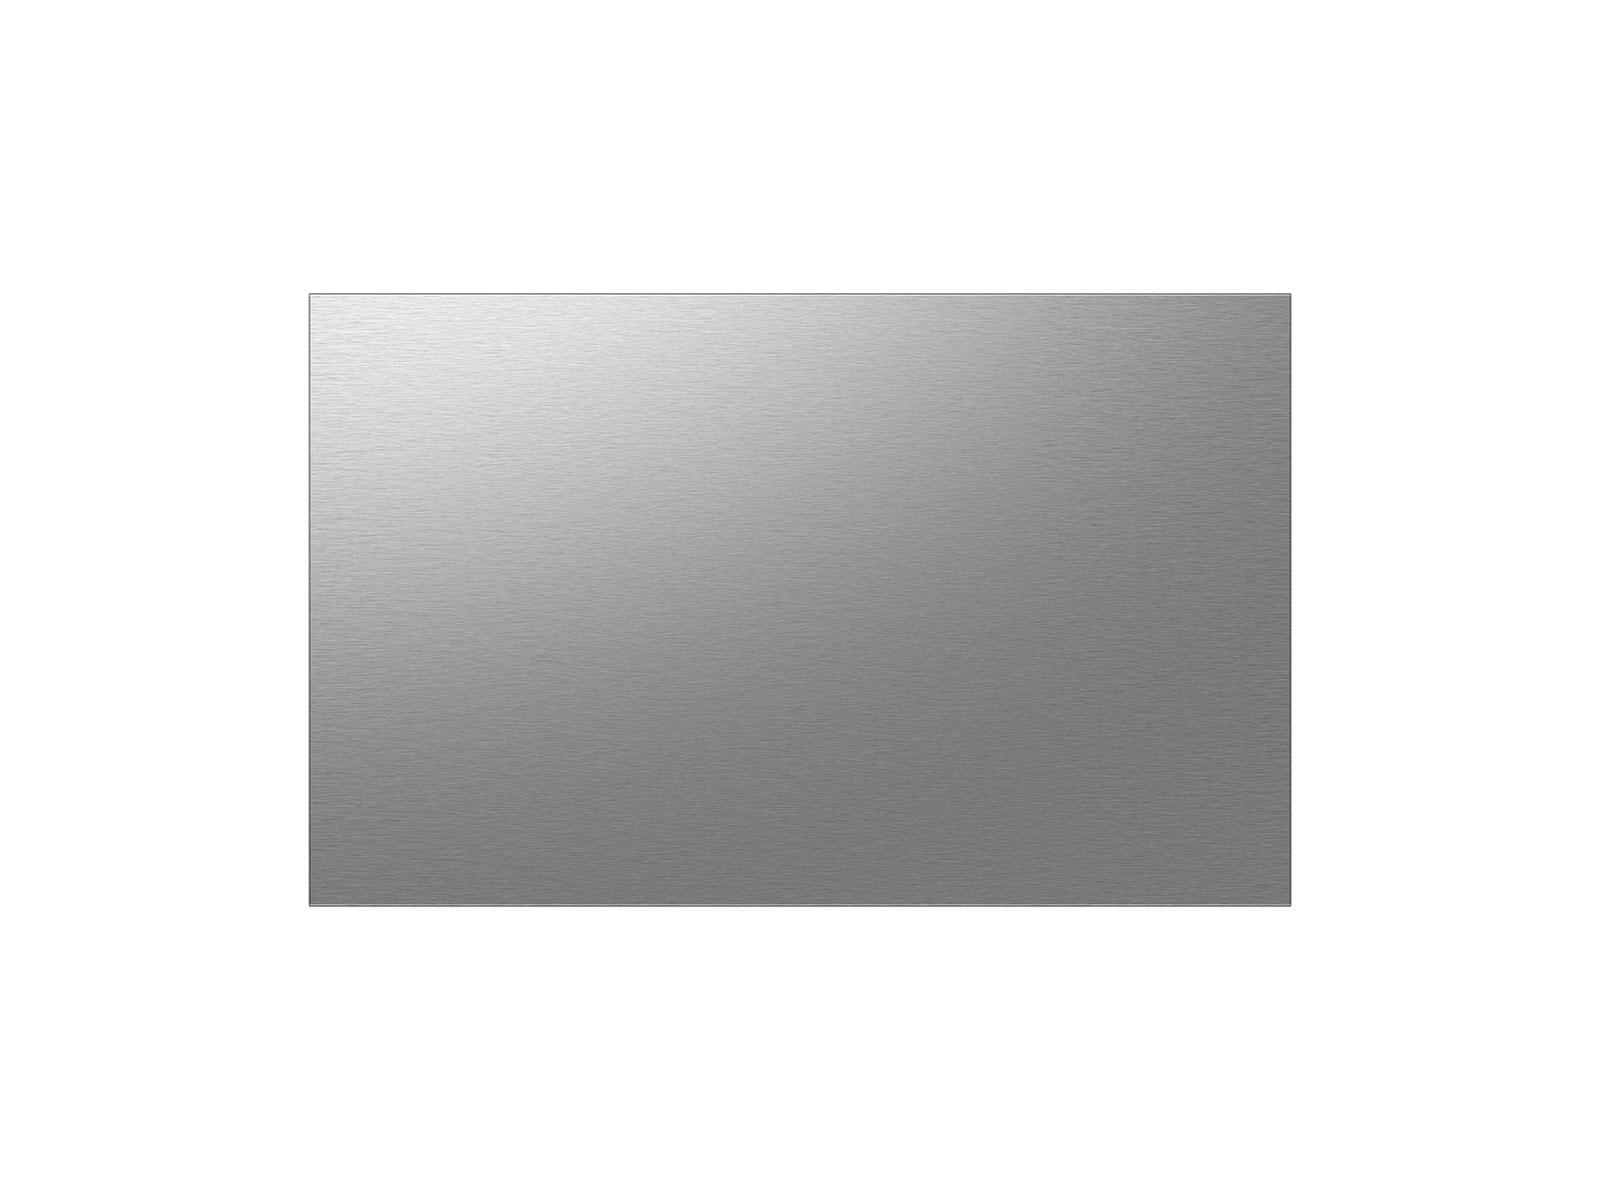 Photos - Fridge Samsung Bespoke 4-Door French Door Refrigerator Panel in Stainless Steel  